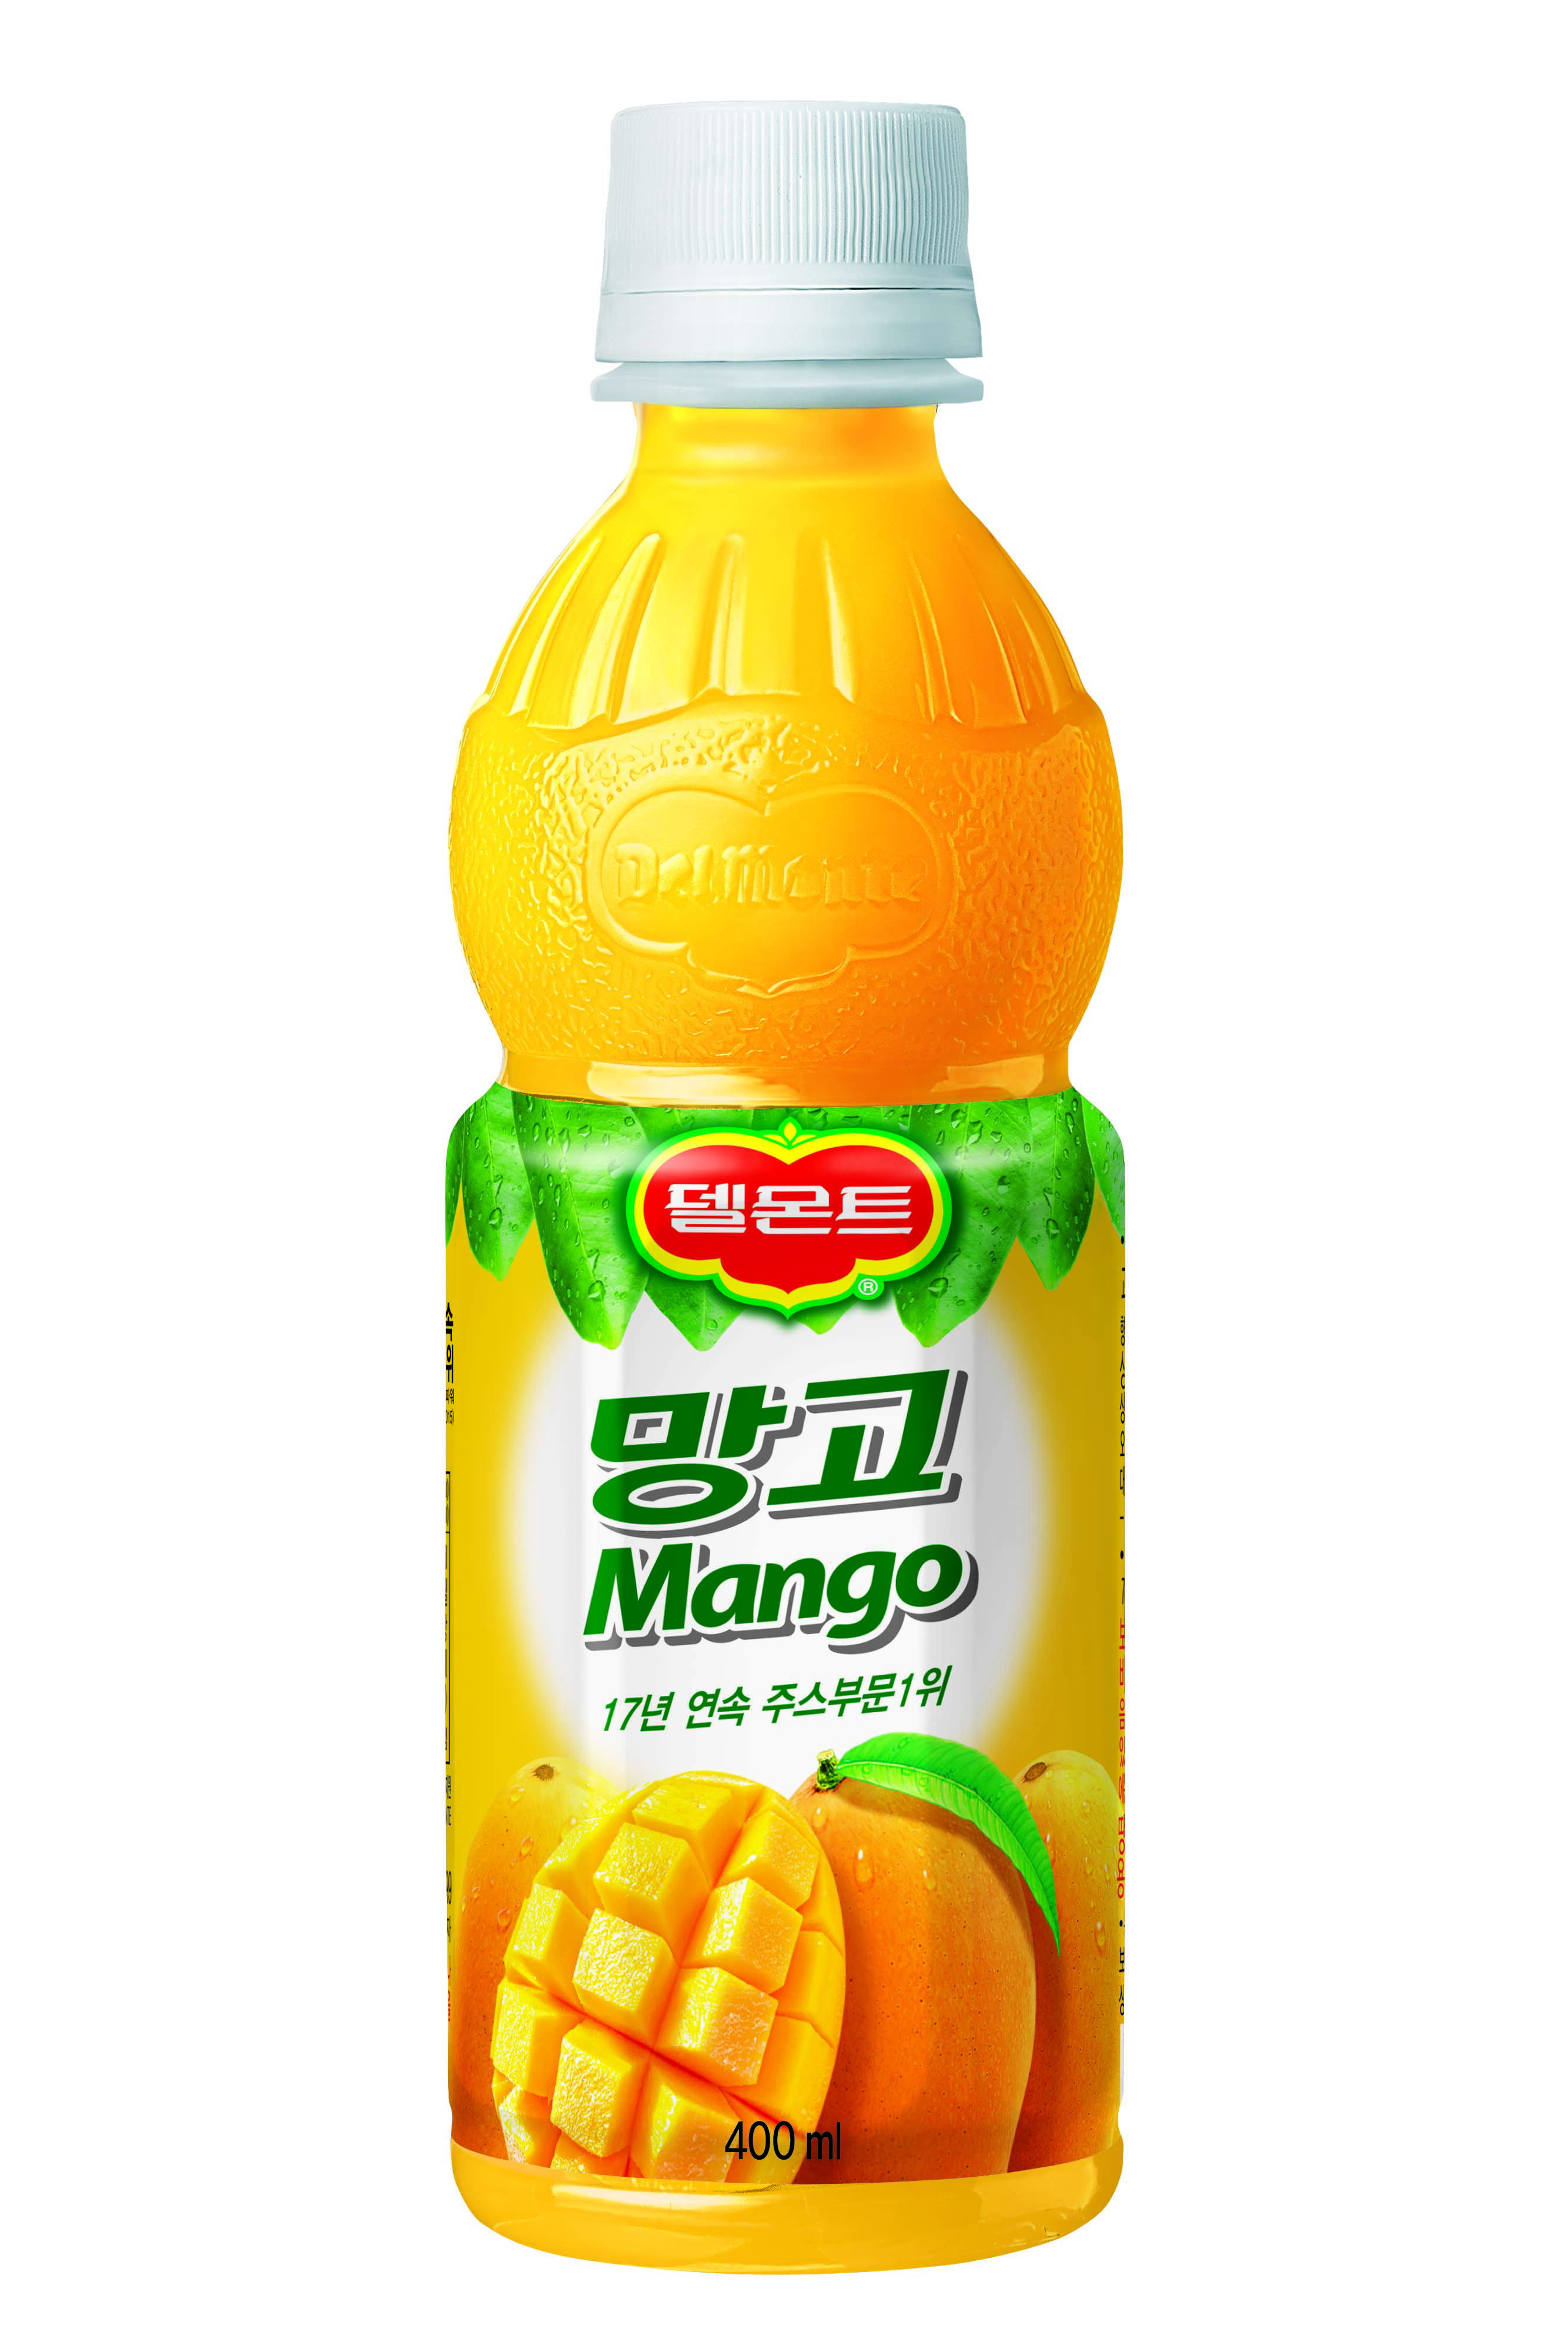 芒果汁图片素材-编号02292542-图行天下